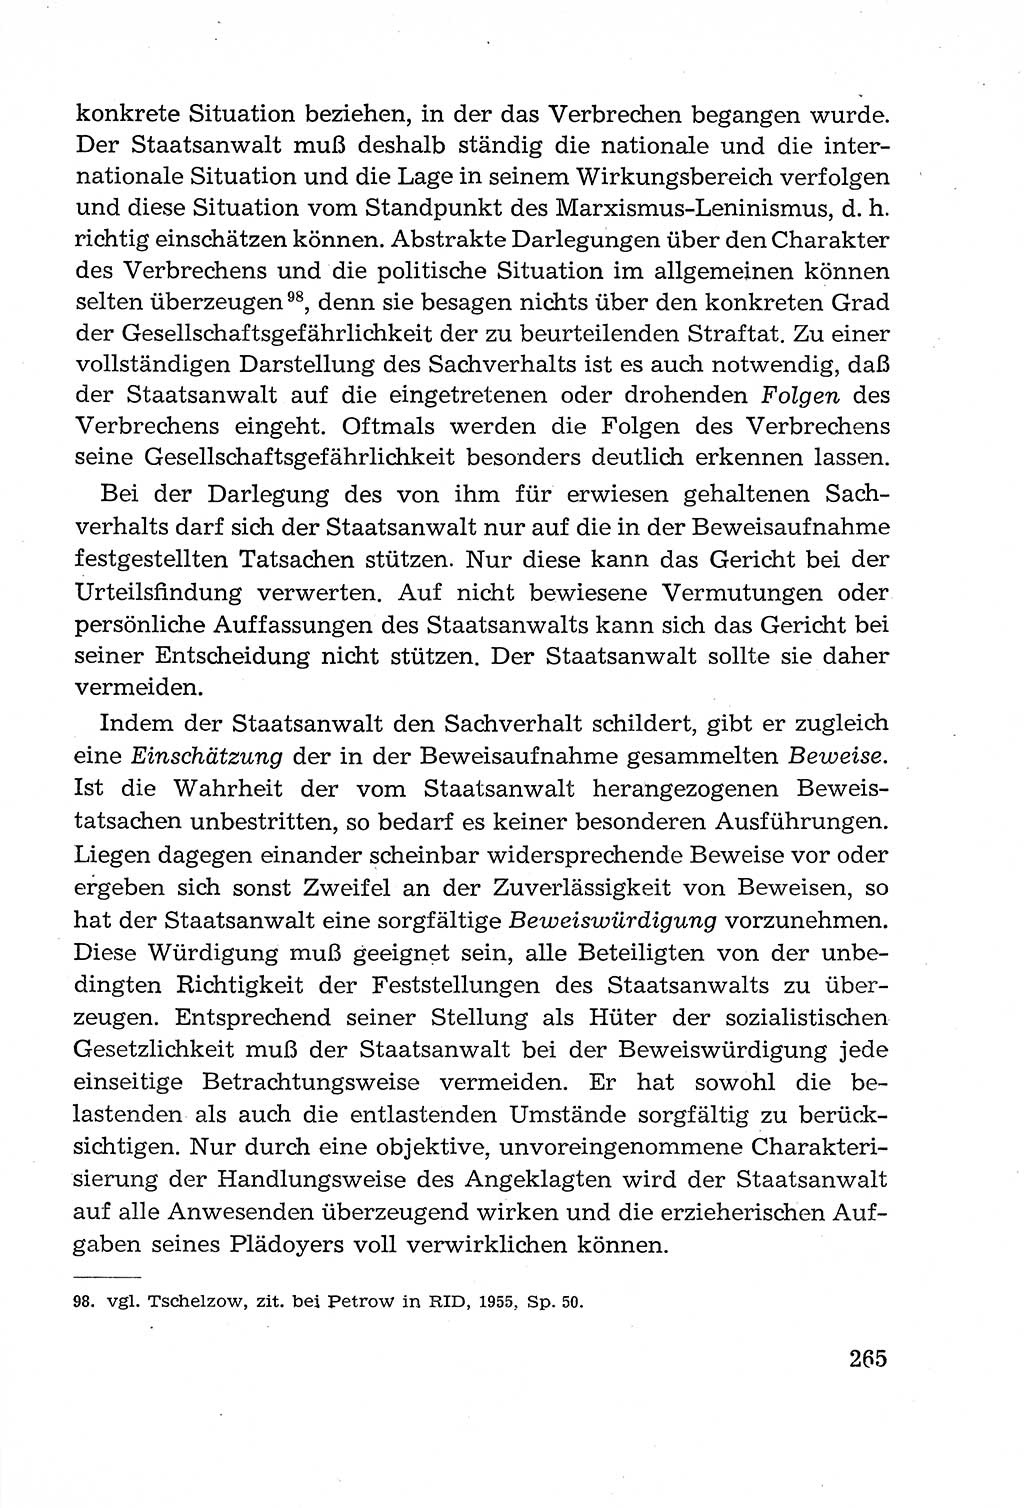 Leitfaden des Strafprozeßrechts der Deutschen Demokratischen Republik (DDR) 1959, Seite 265 (LF StPR DDR 1959, S. 265)